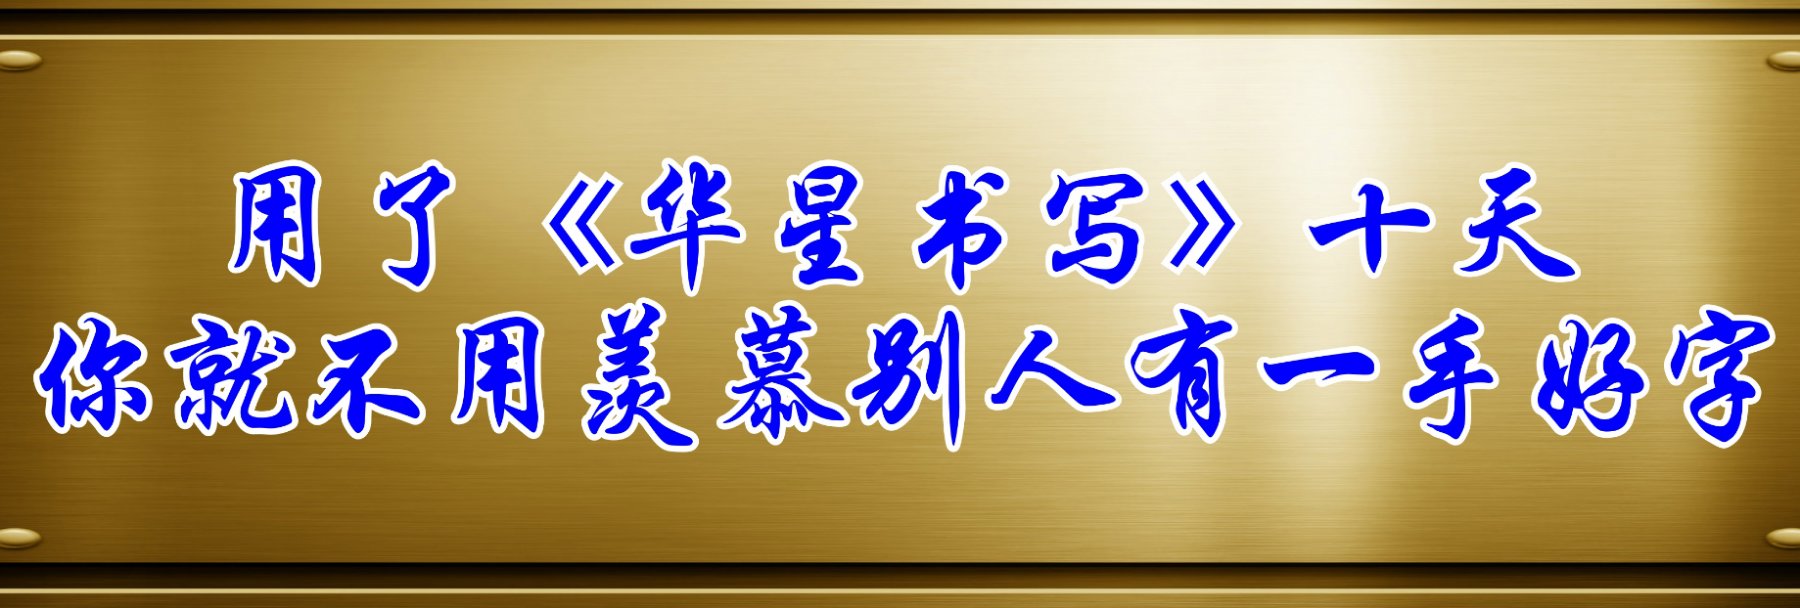  华星书写不教书法 只教最基础的汉字规范化书写  书写标准化教程的开创